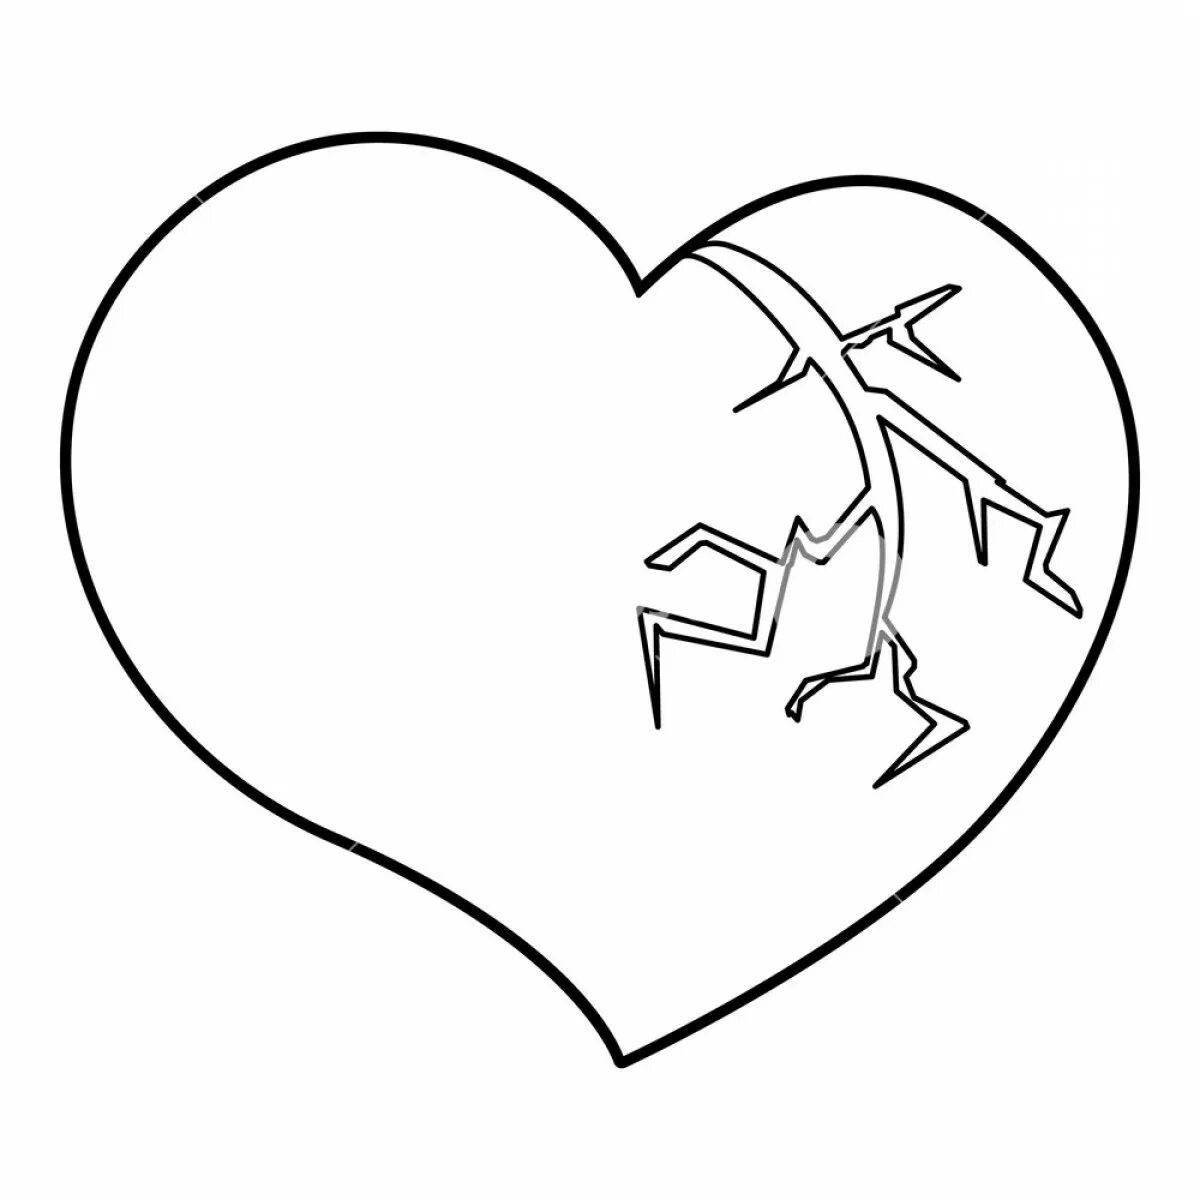 Adorable broken heart coloring page